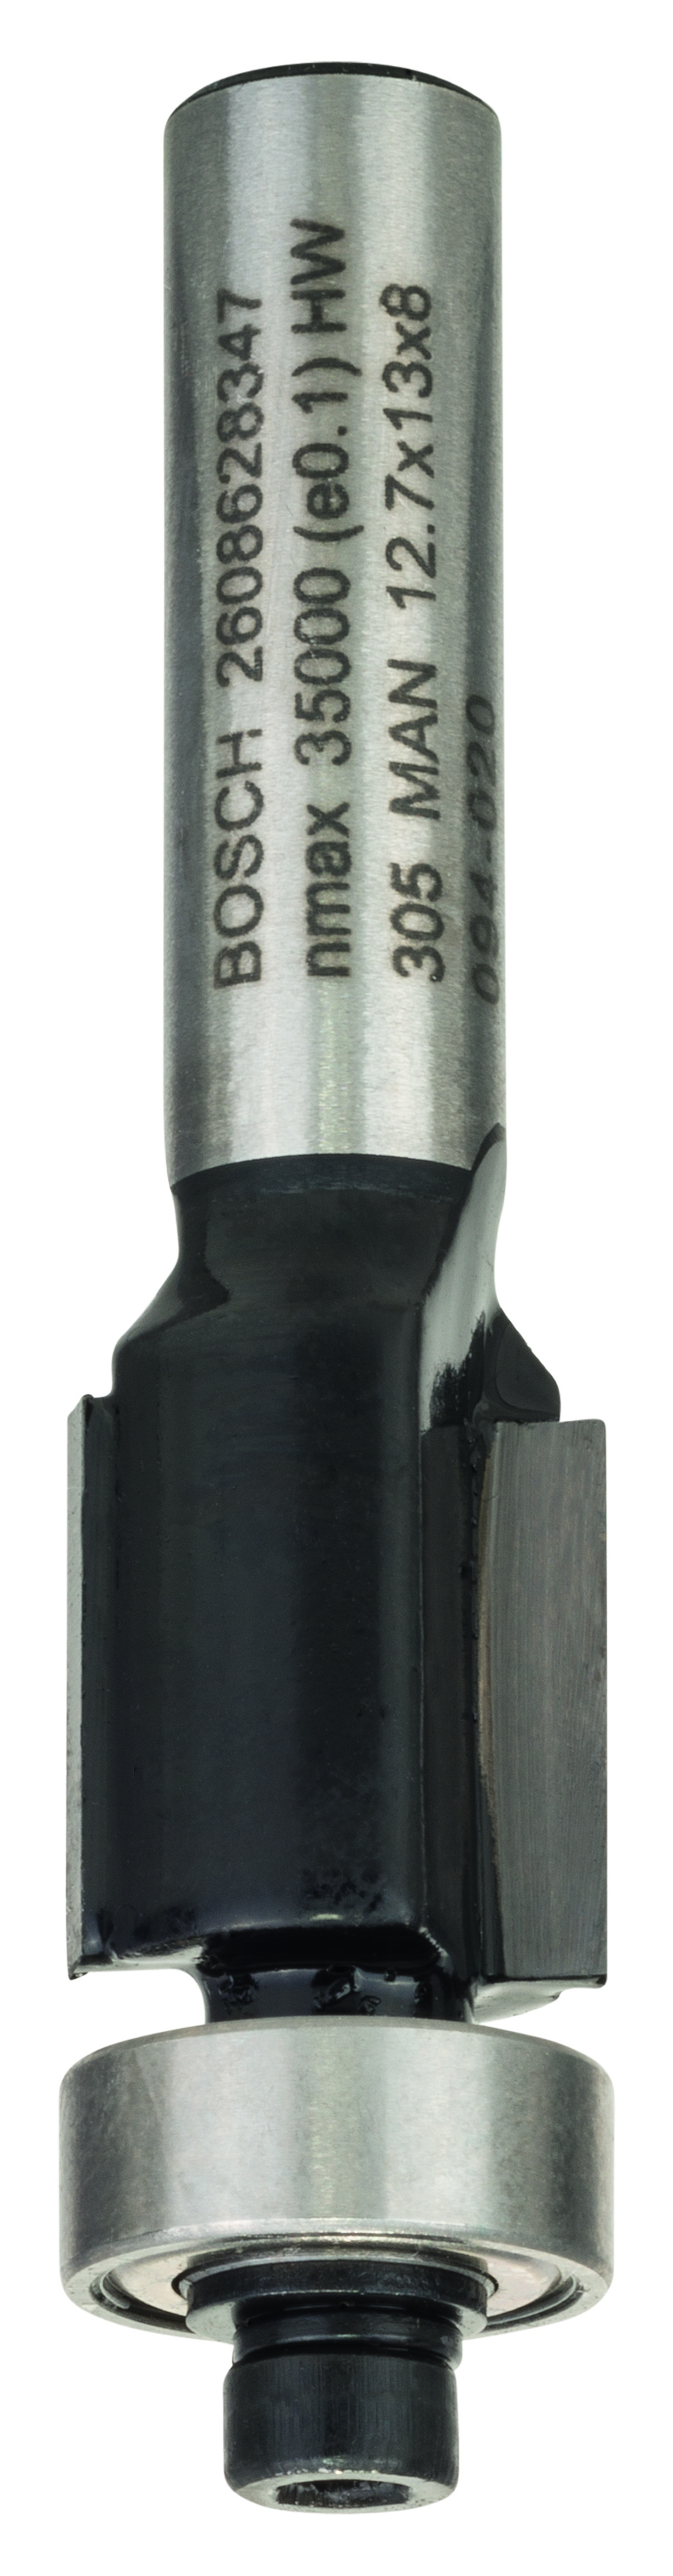 Bosch Bündigfräser Standard for Wood 8 mm D1 12,7 mm L 25,4 mm G 68 mm 